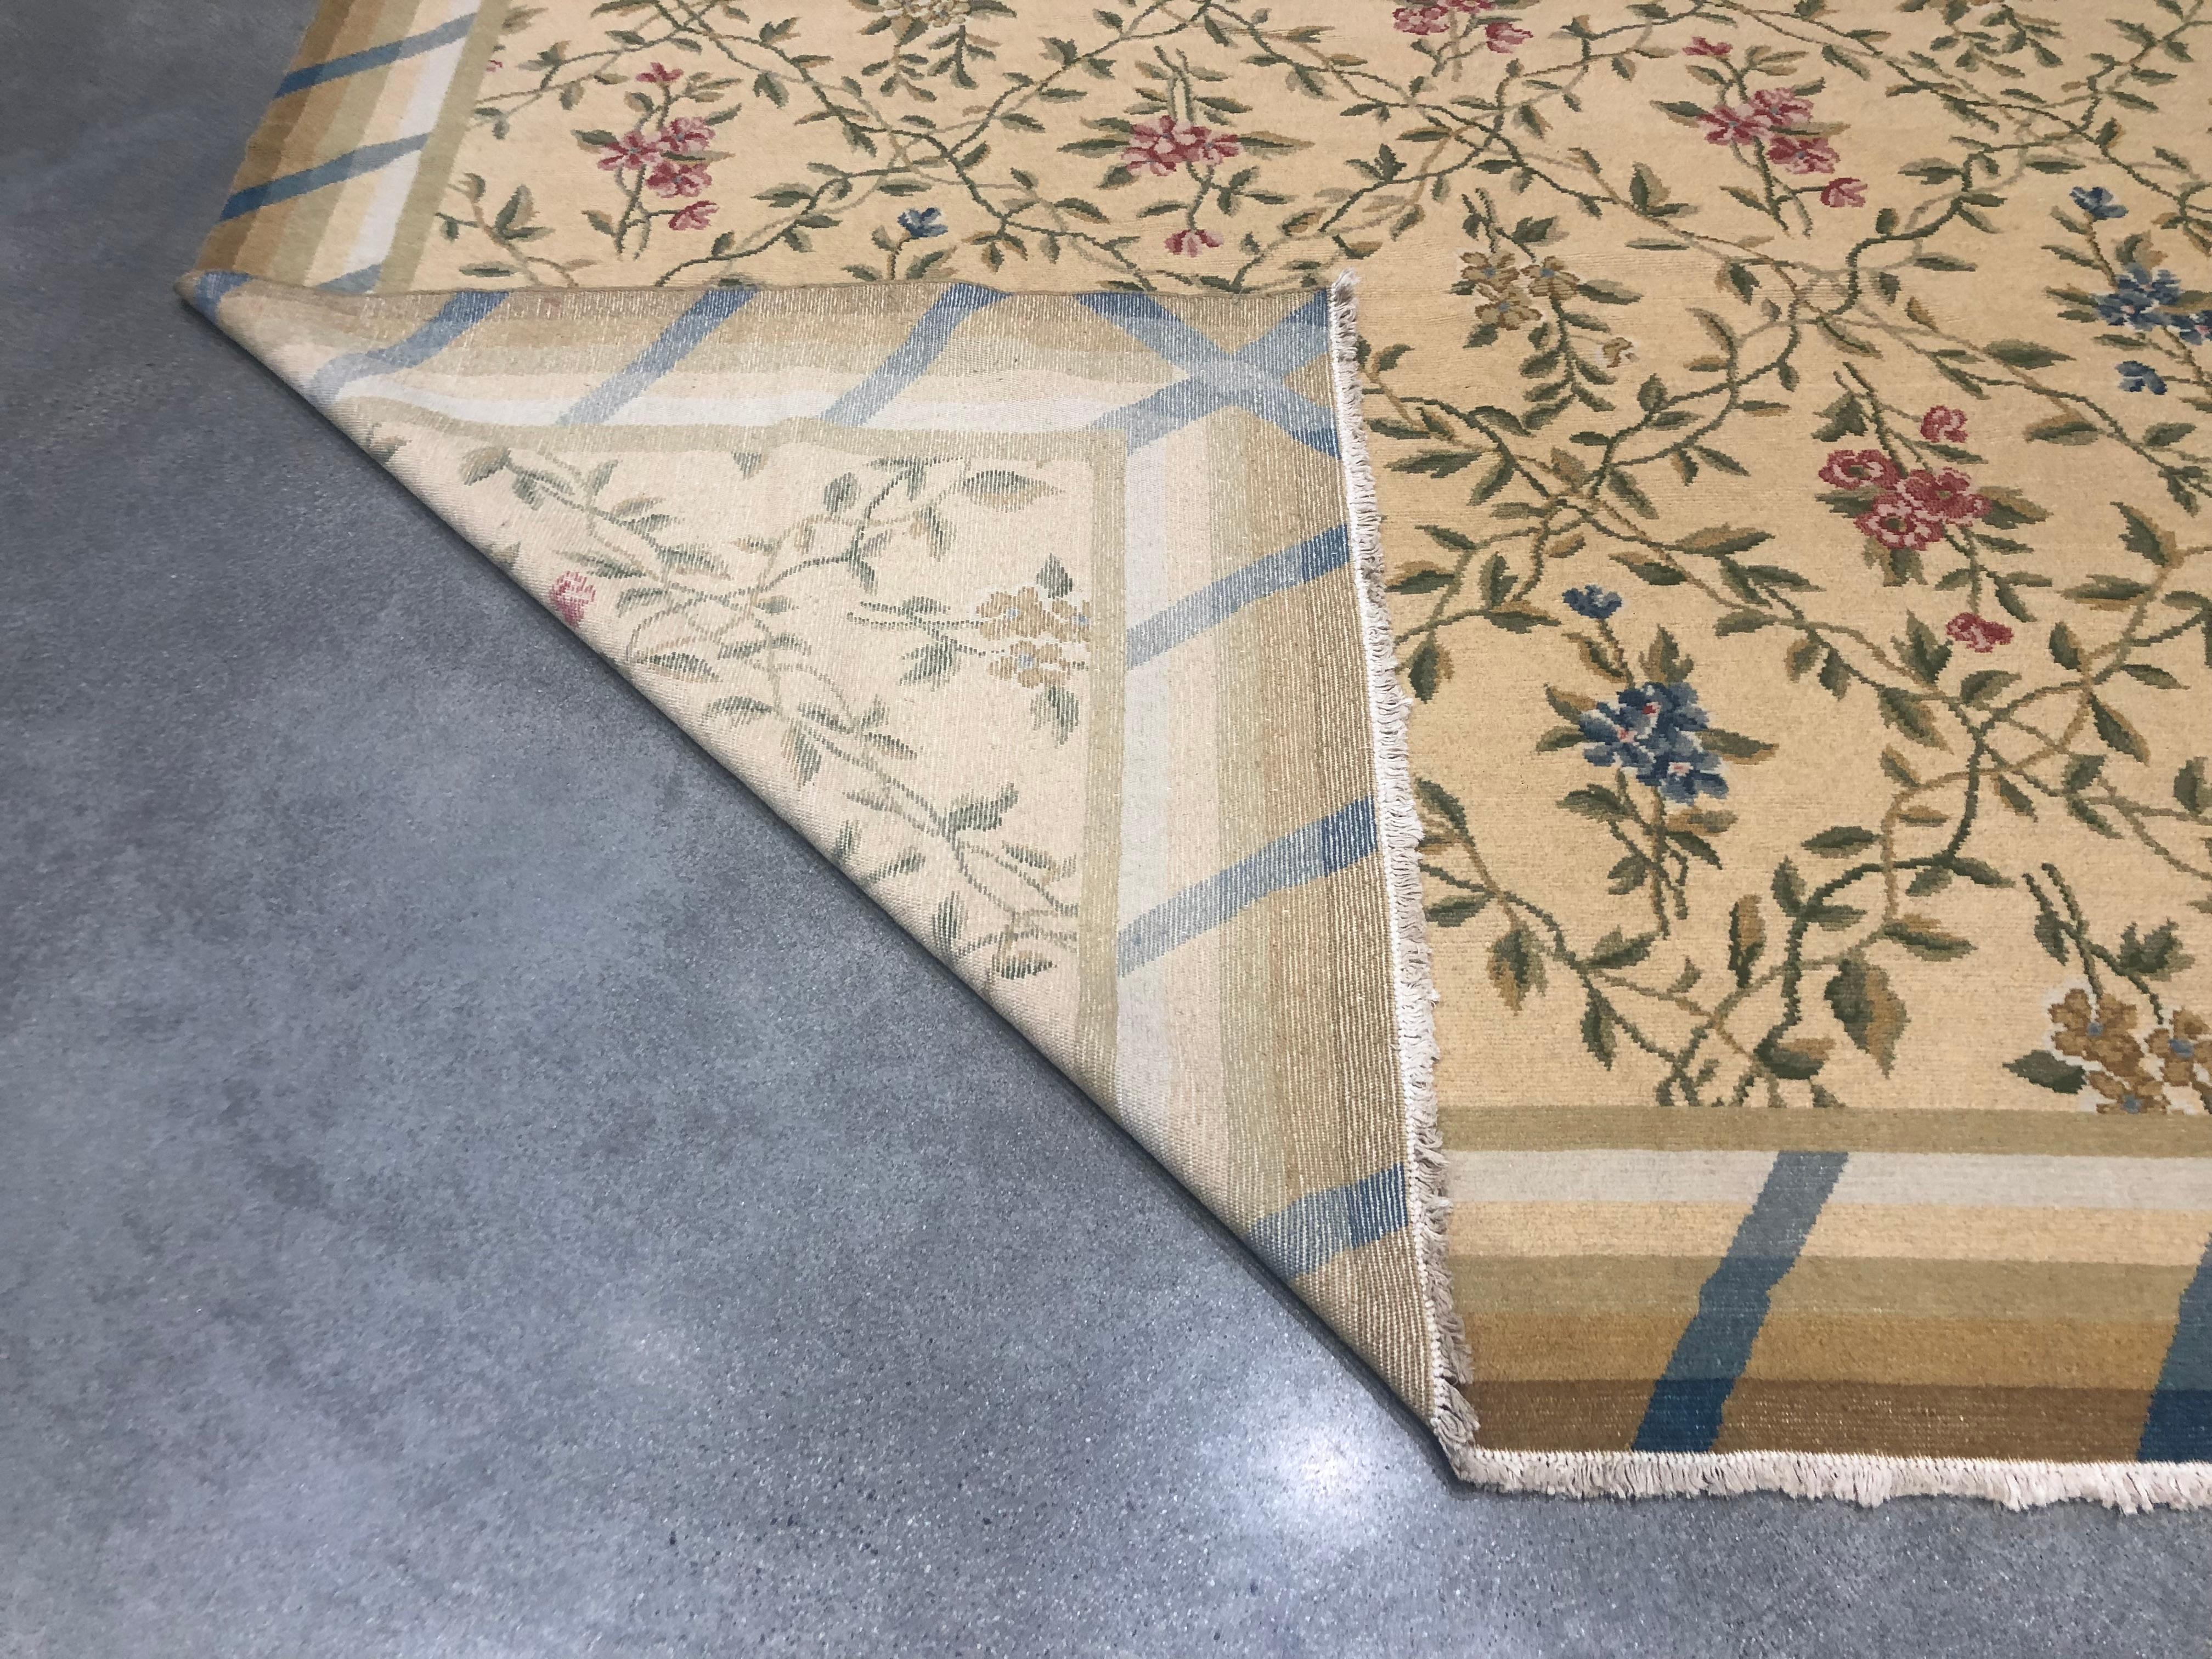 Bei diesem handgefertigten Teppich aus Bassarabien trifft Moderne auf Tradition. In der Mitte ist ein traditioneller Blumendruck mit blauen, roten und goldenen Sprenkeln auf einem goldenen Feld zu sehen; an den Rändern kühle blaue Linien, die